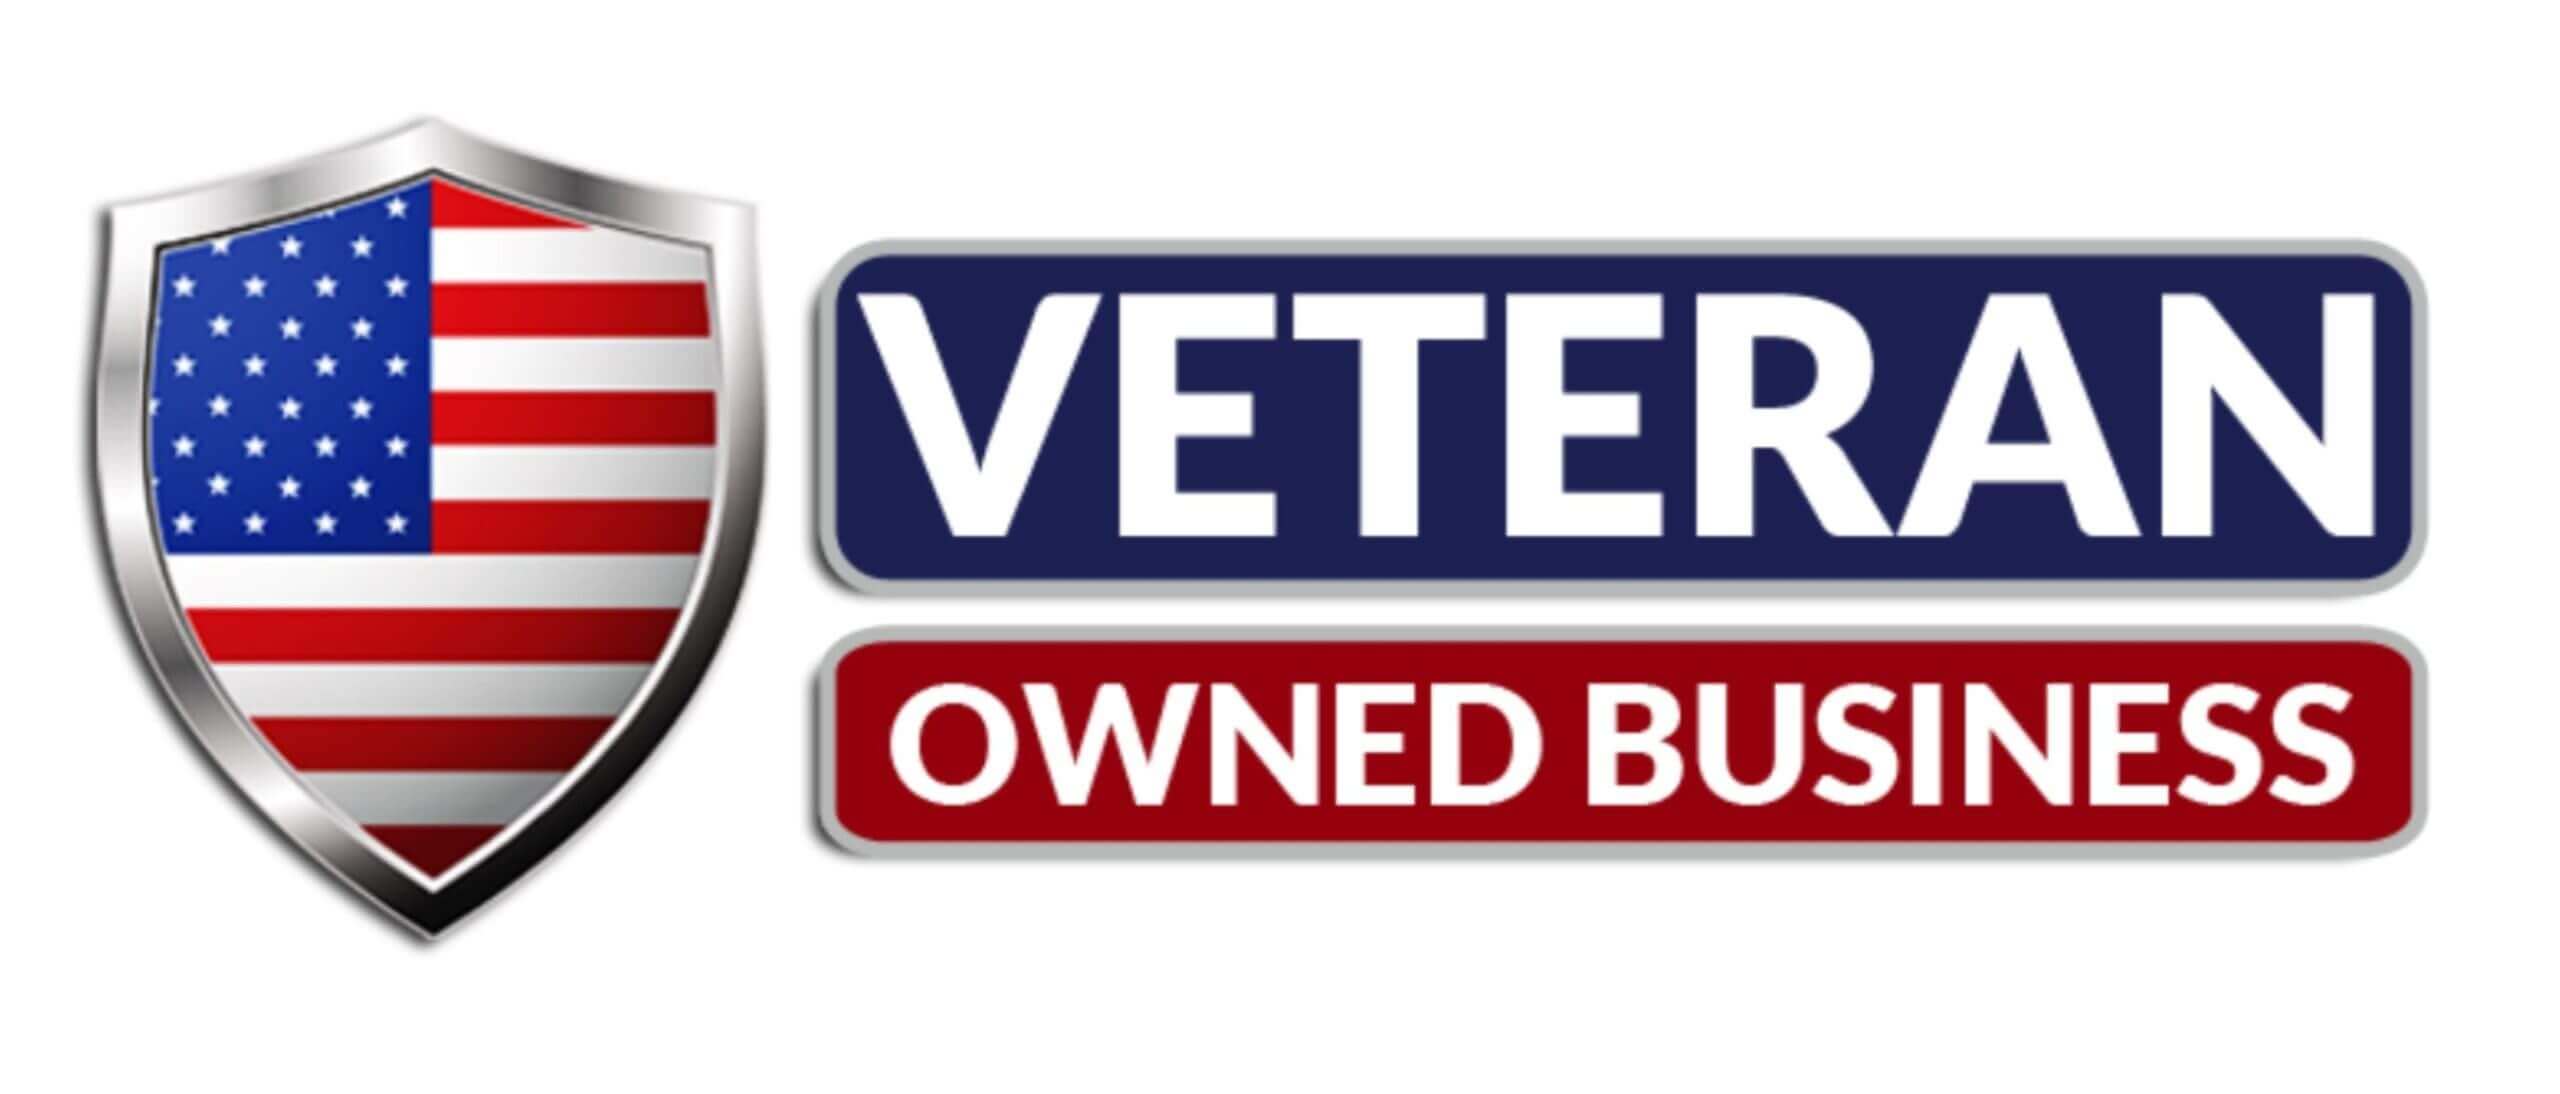 veteran-owned-business-logo-same-as-krueger-e1523570269938-scaled-1.jpg